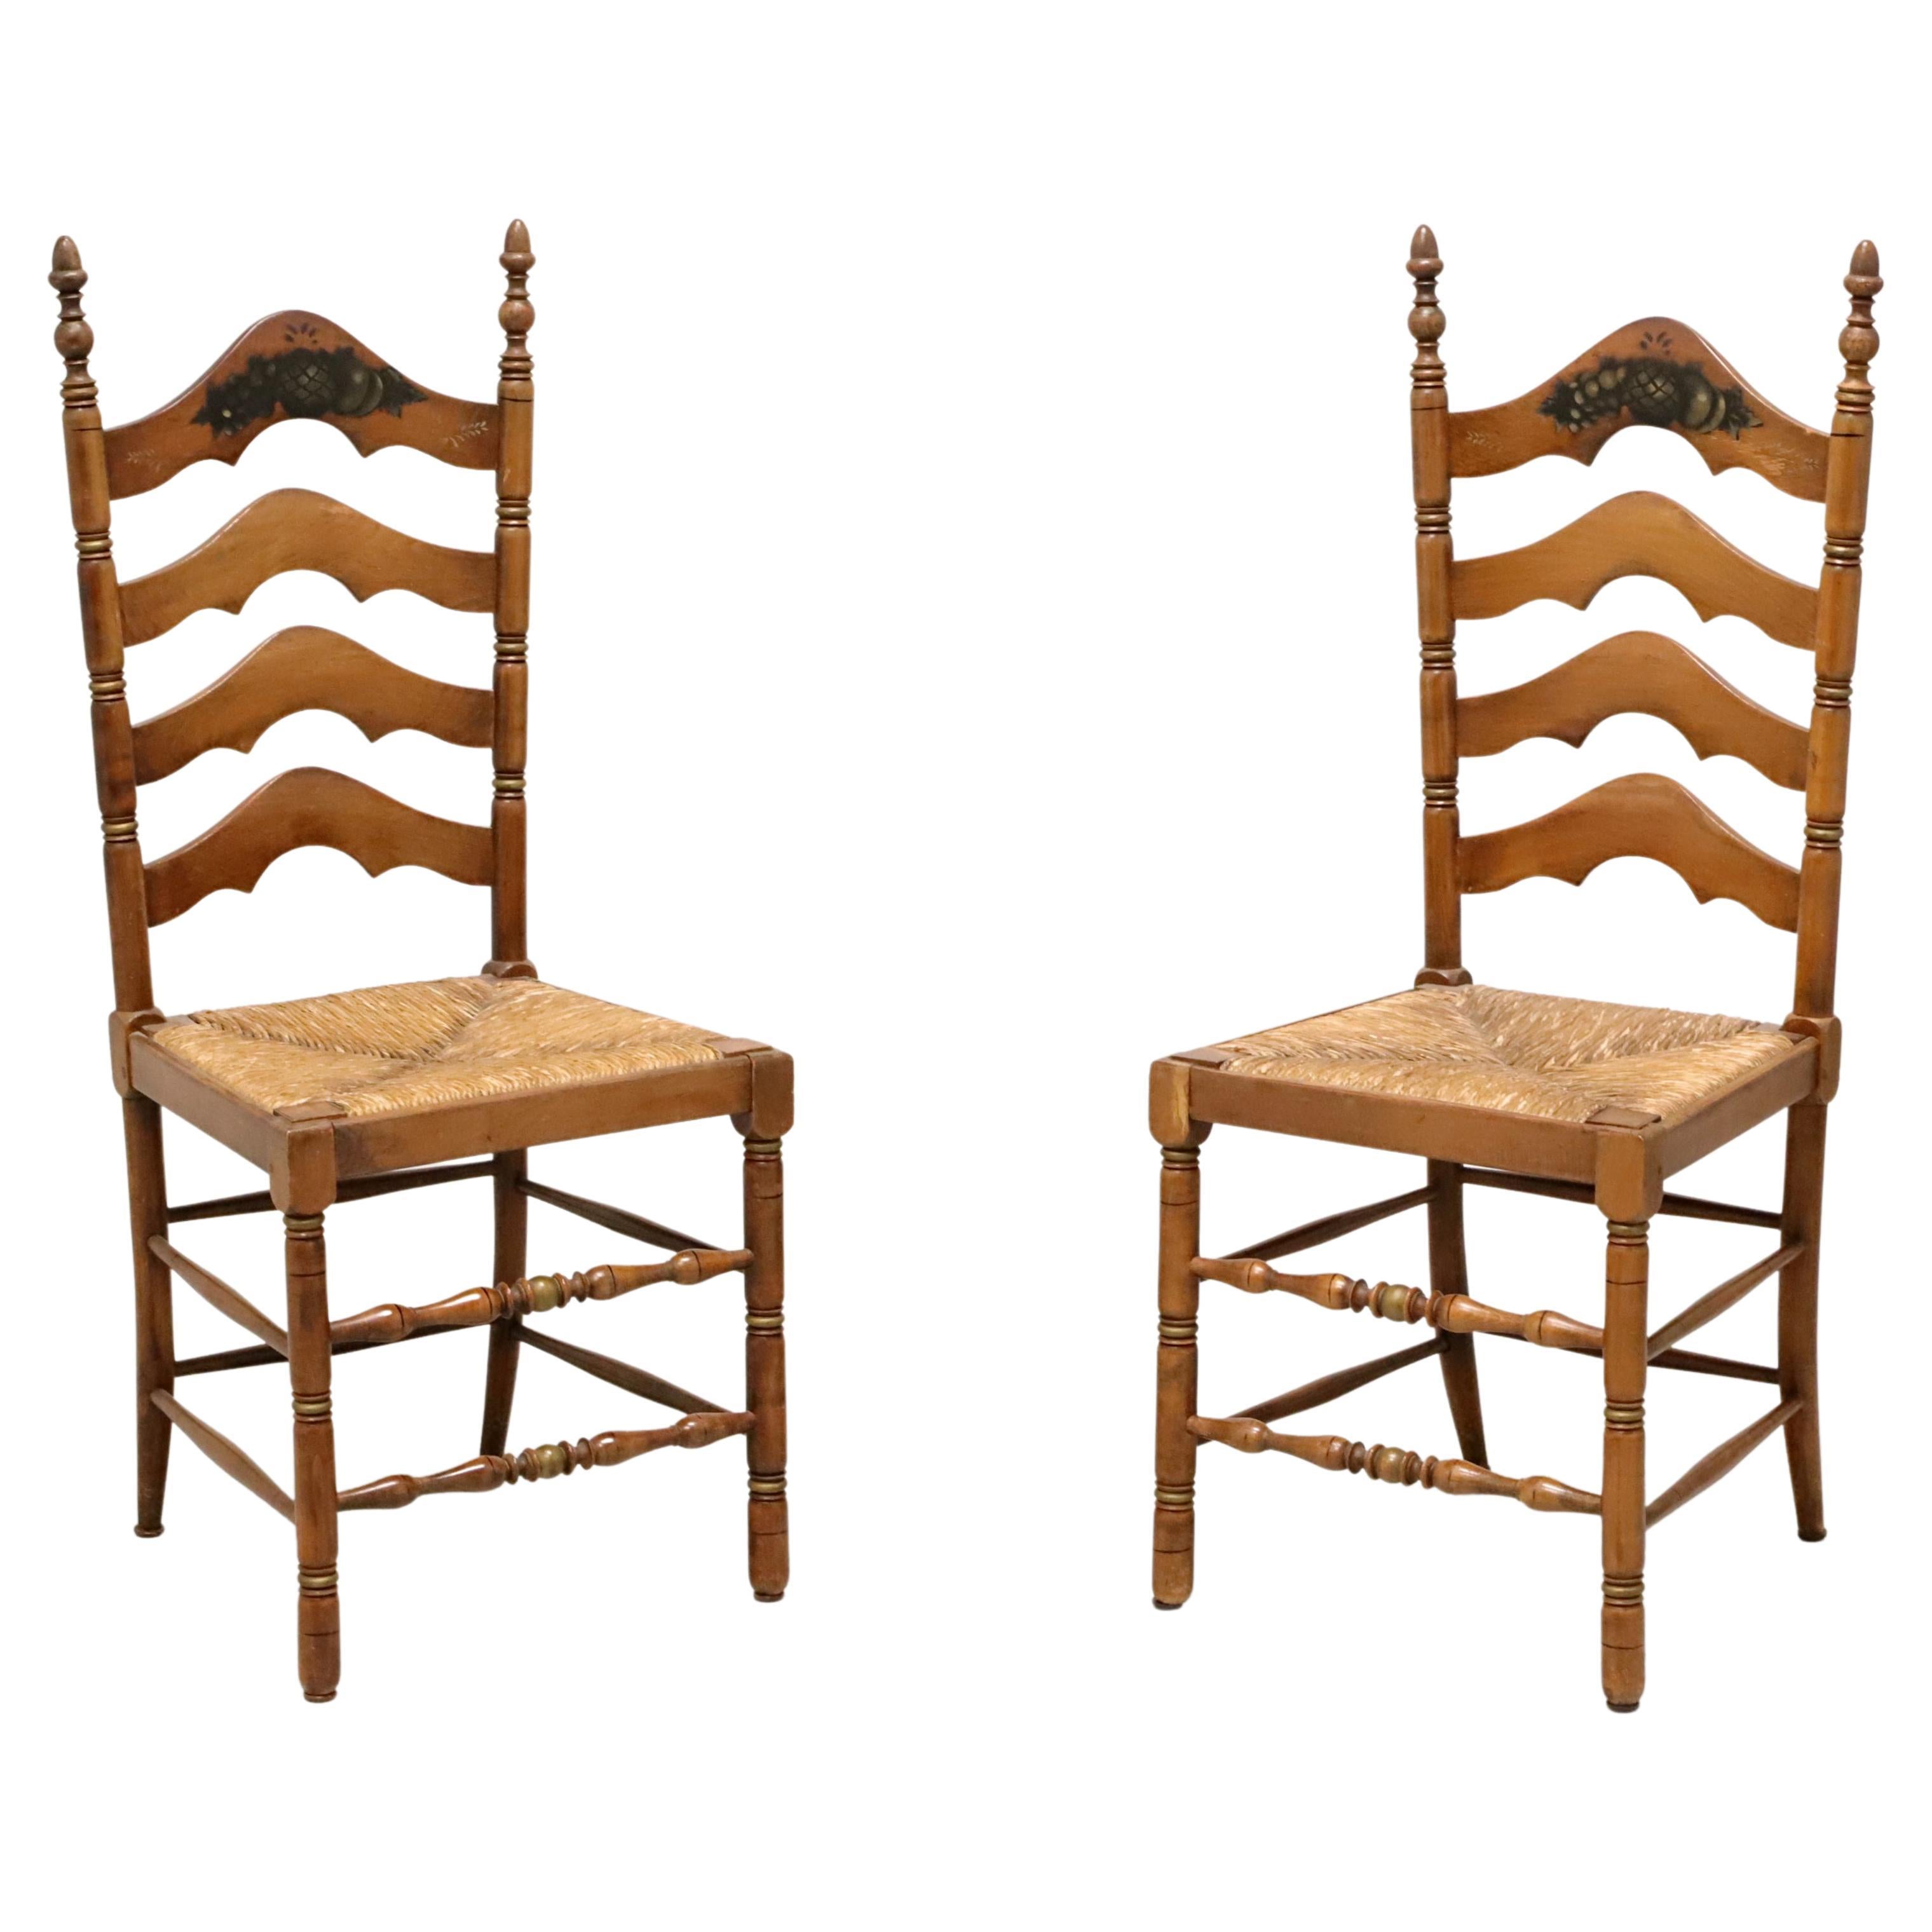 CAPE ANN CHAIRS Esszimmerstühle aus Ahornholz mit Leiterrückenlehne und Binsensitzen - Paar B